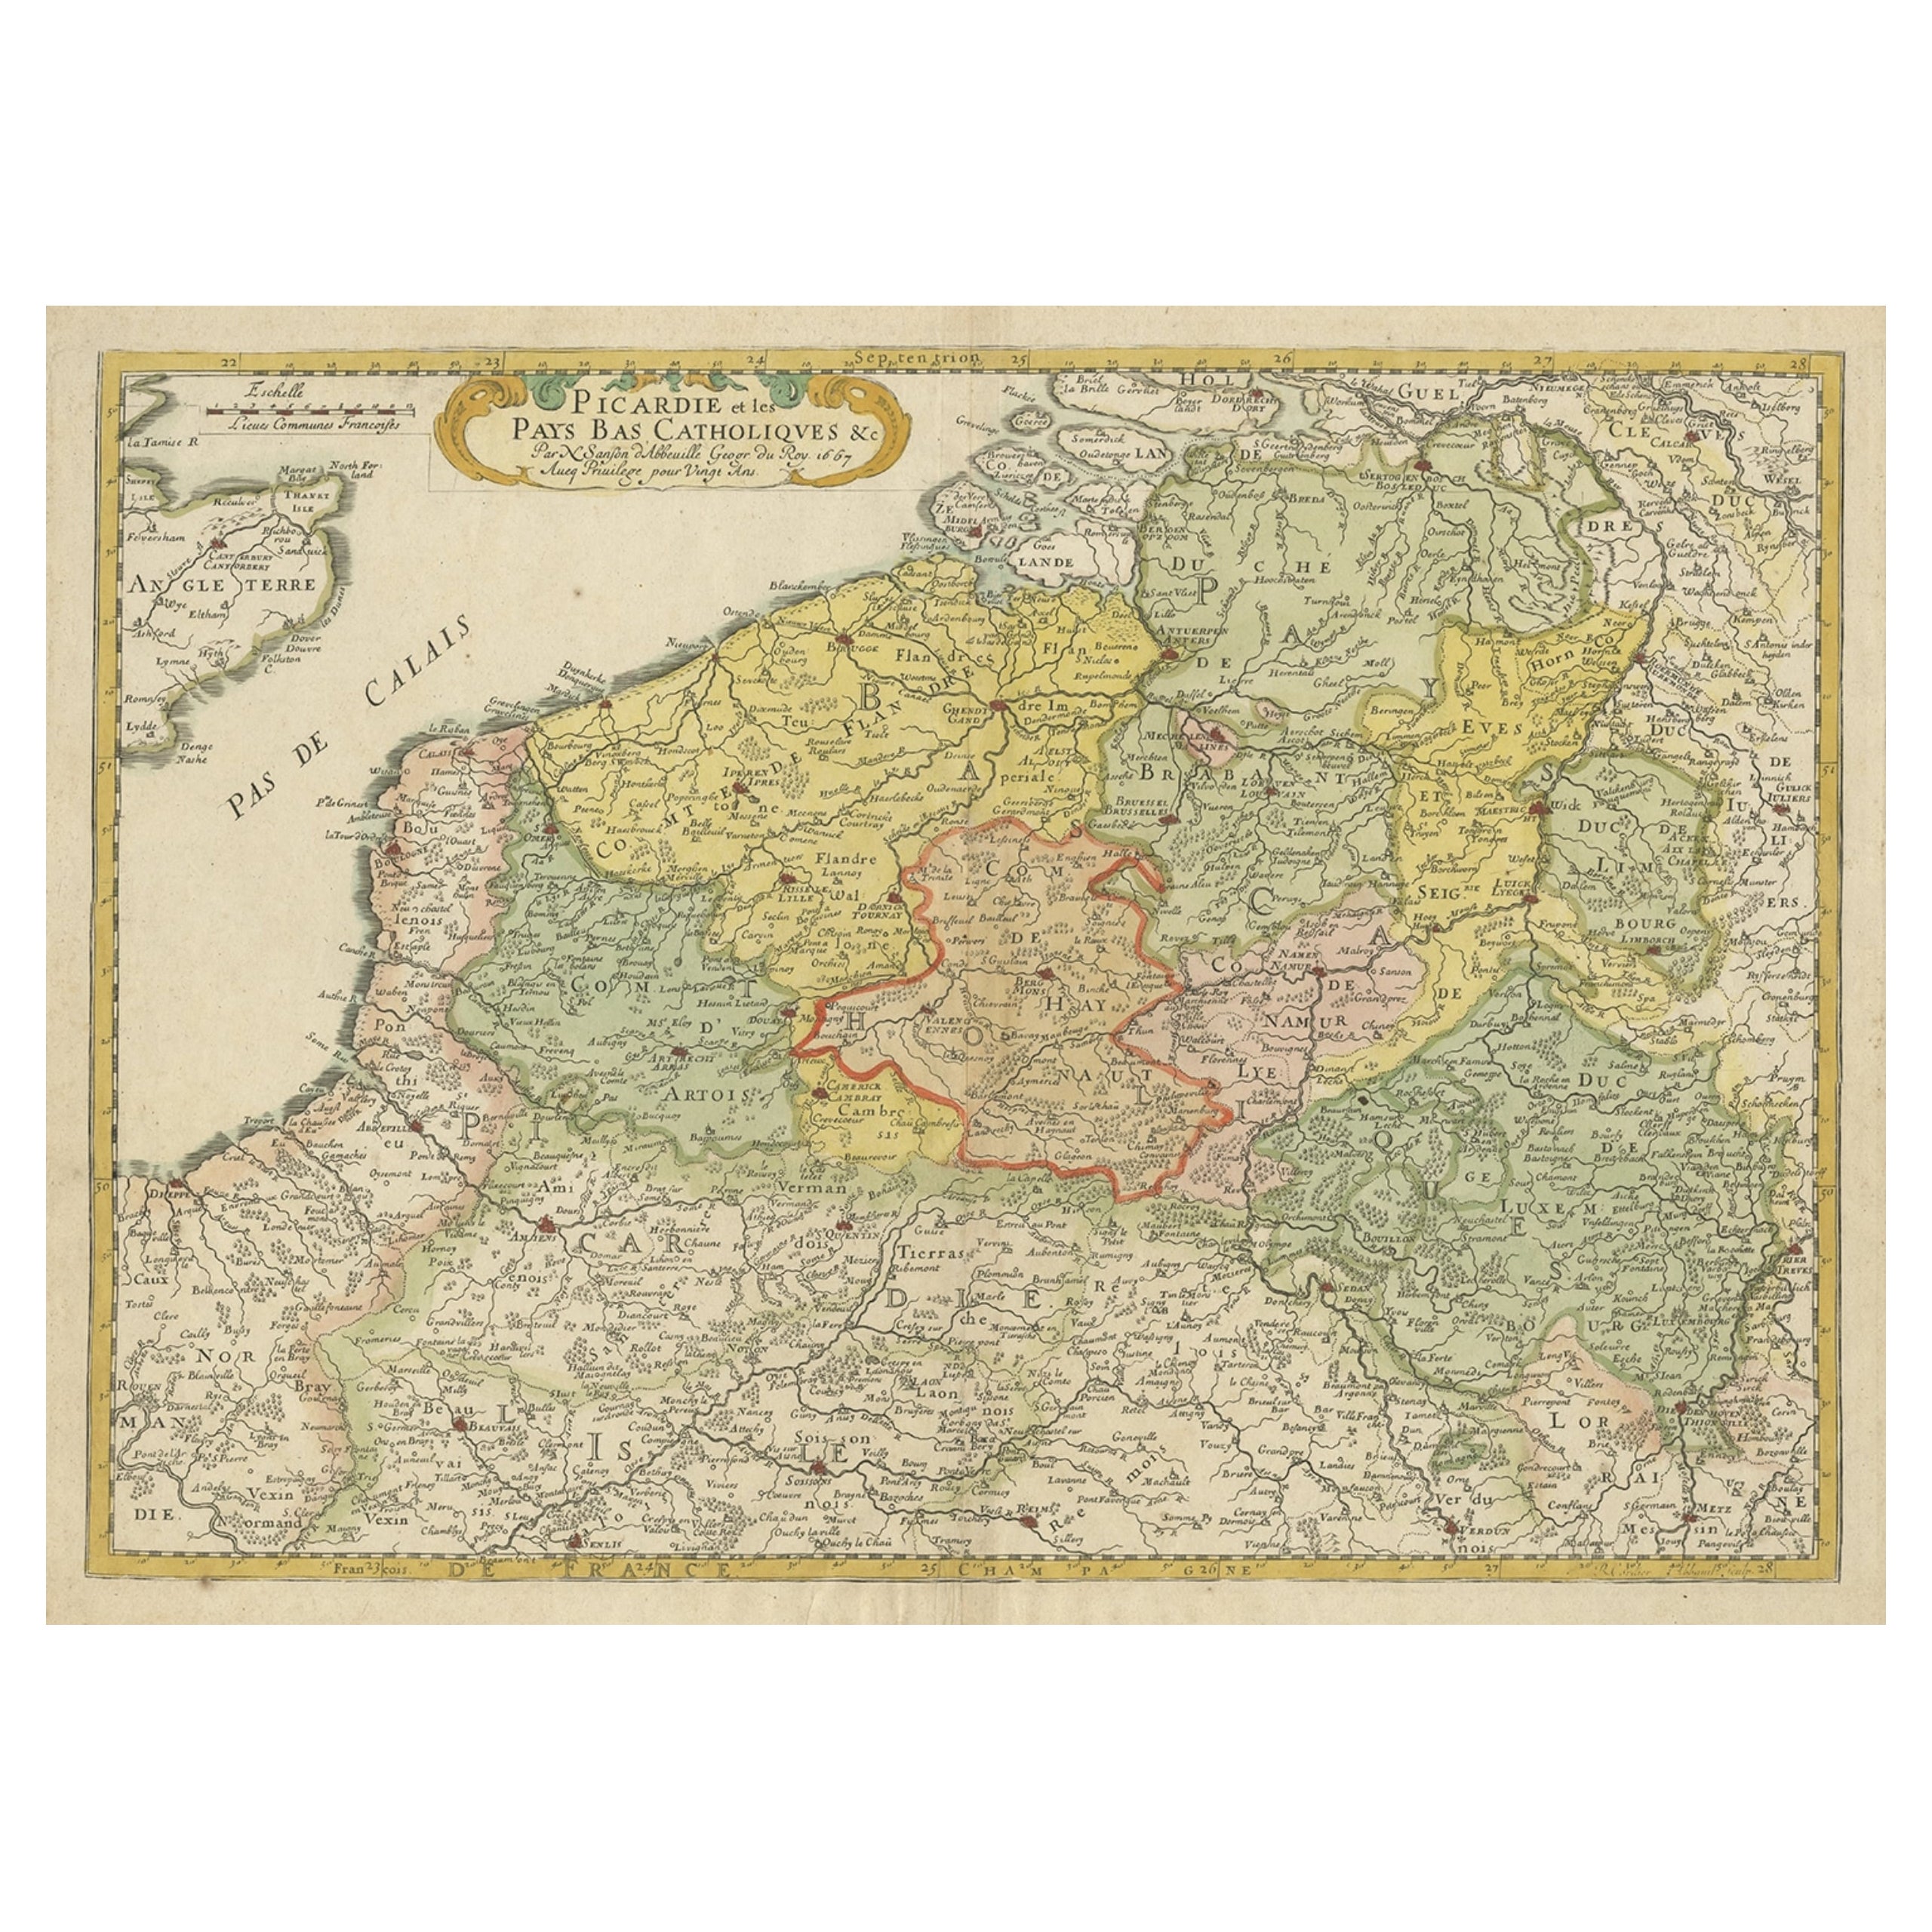 Carte ancienne régionale détaillée du nord-ouest de la France et de la Belgique catholique, 1648